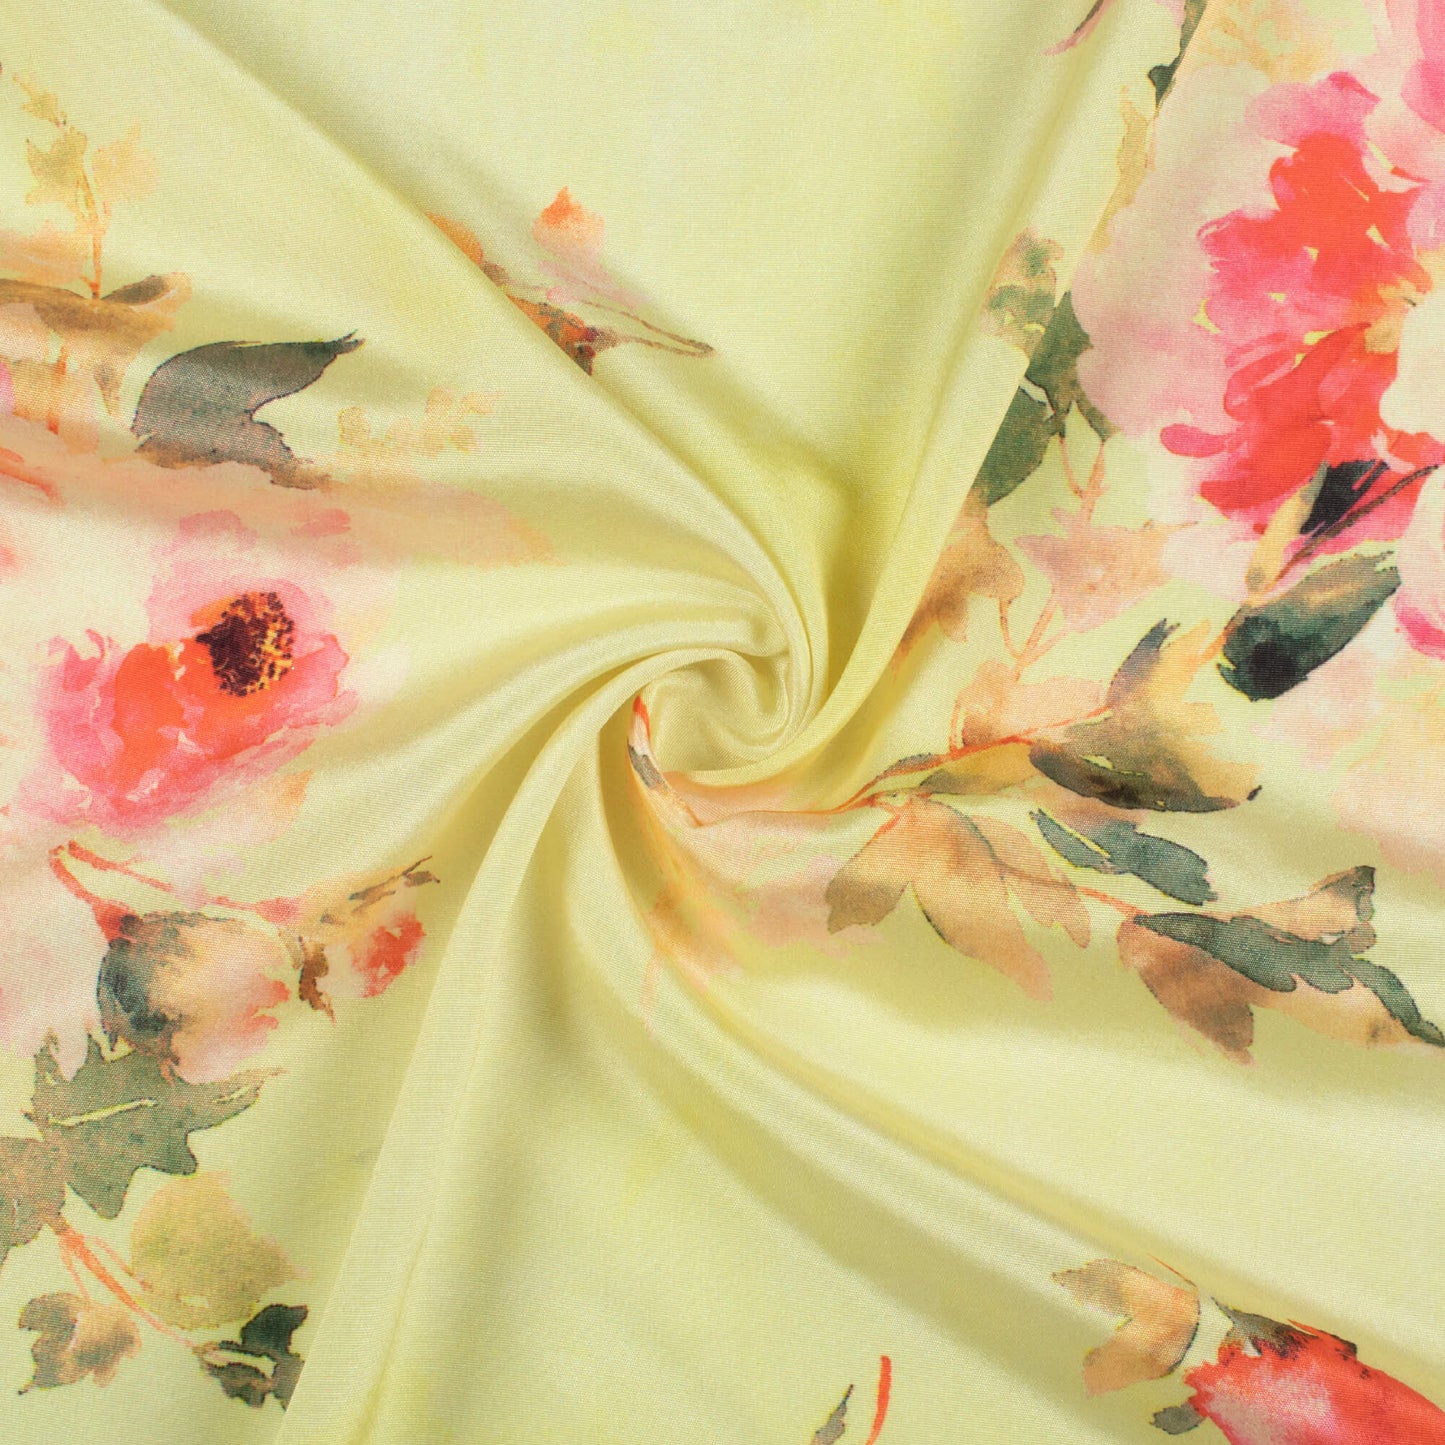 Lemon Yellow And Persian Red Floral Pattern Digital Print Crepe Silk Fabric